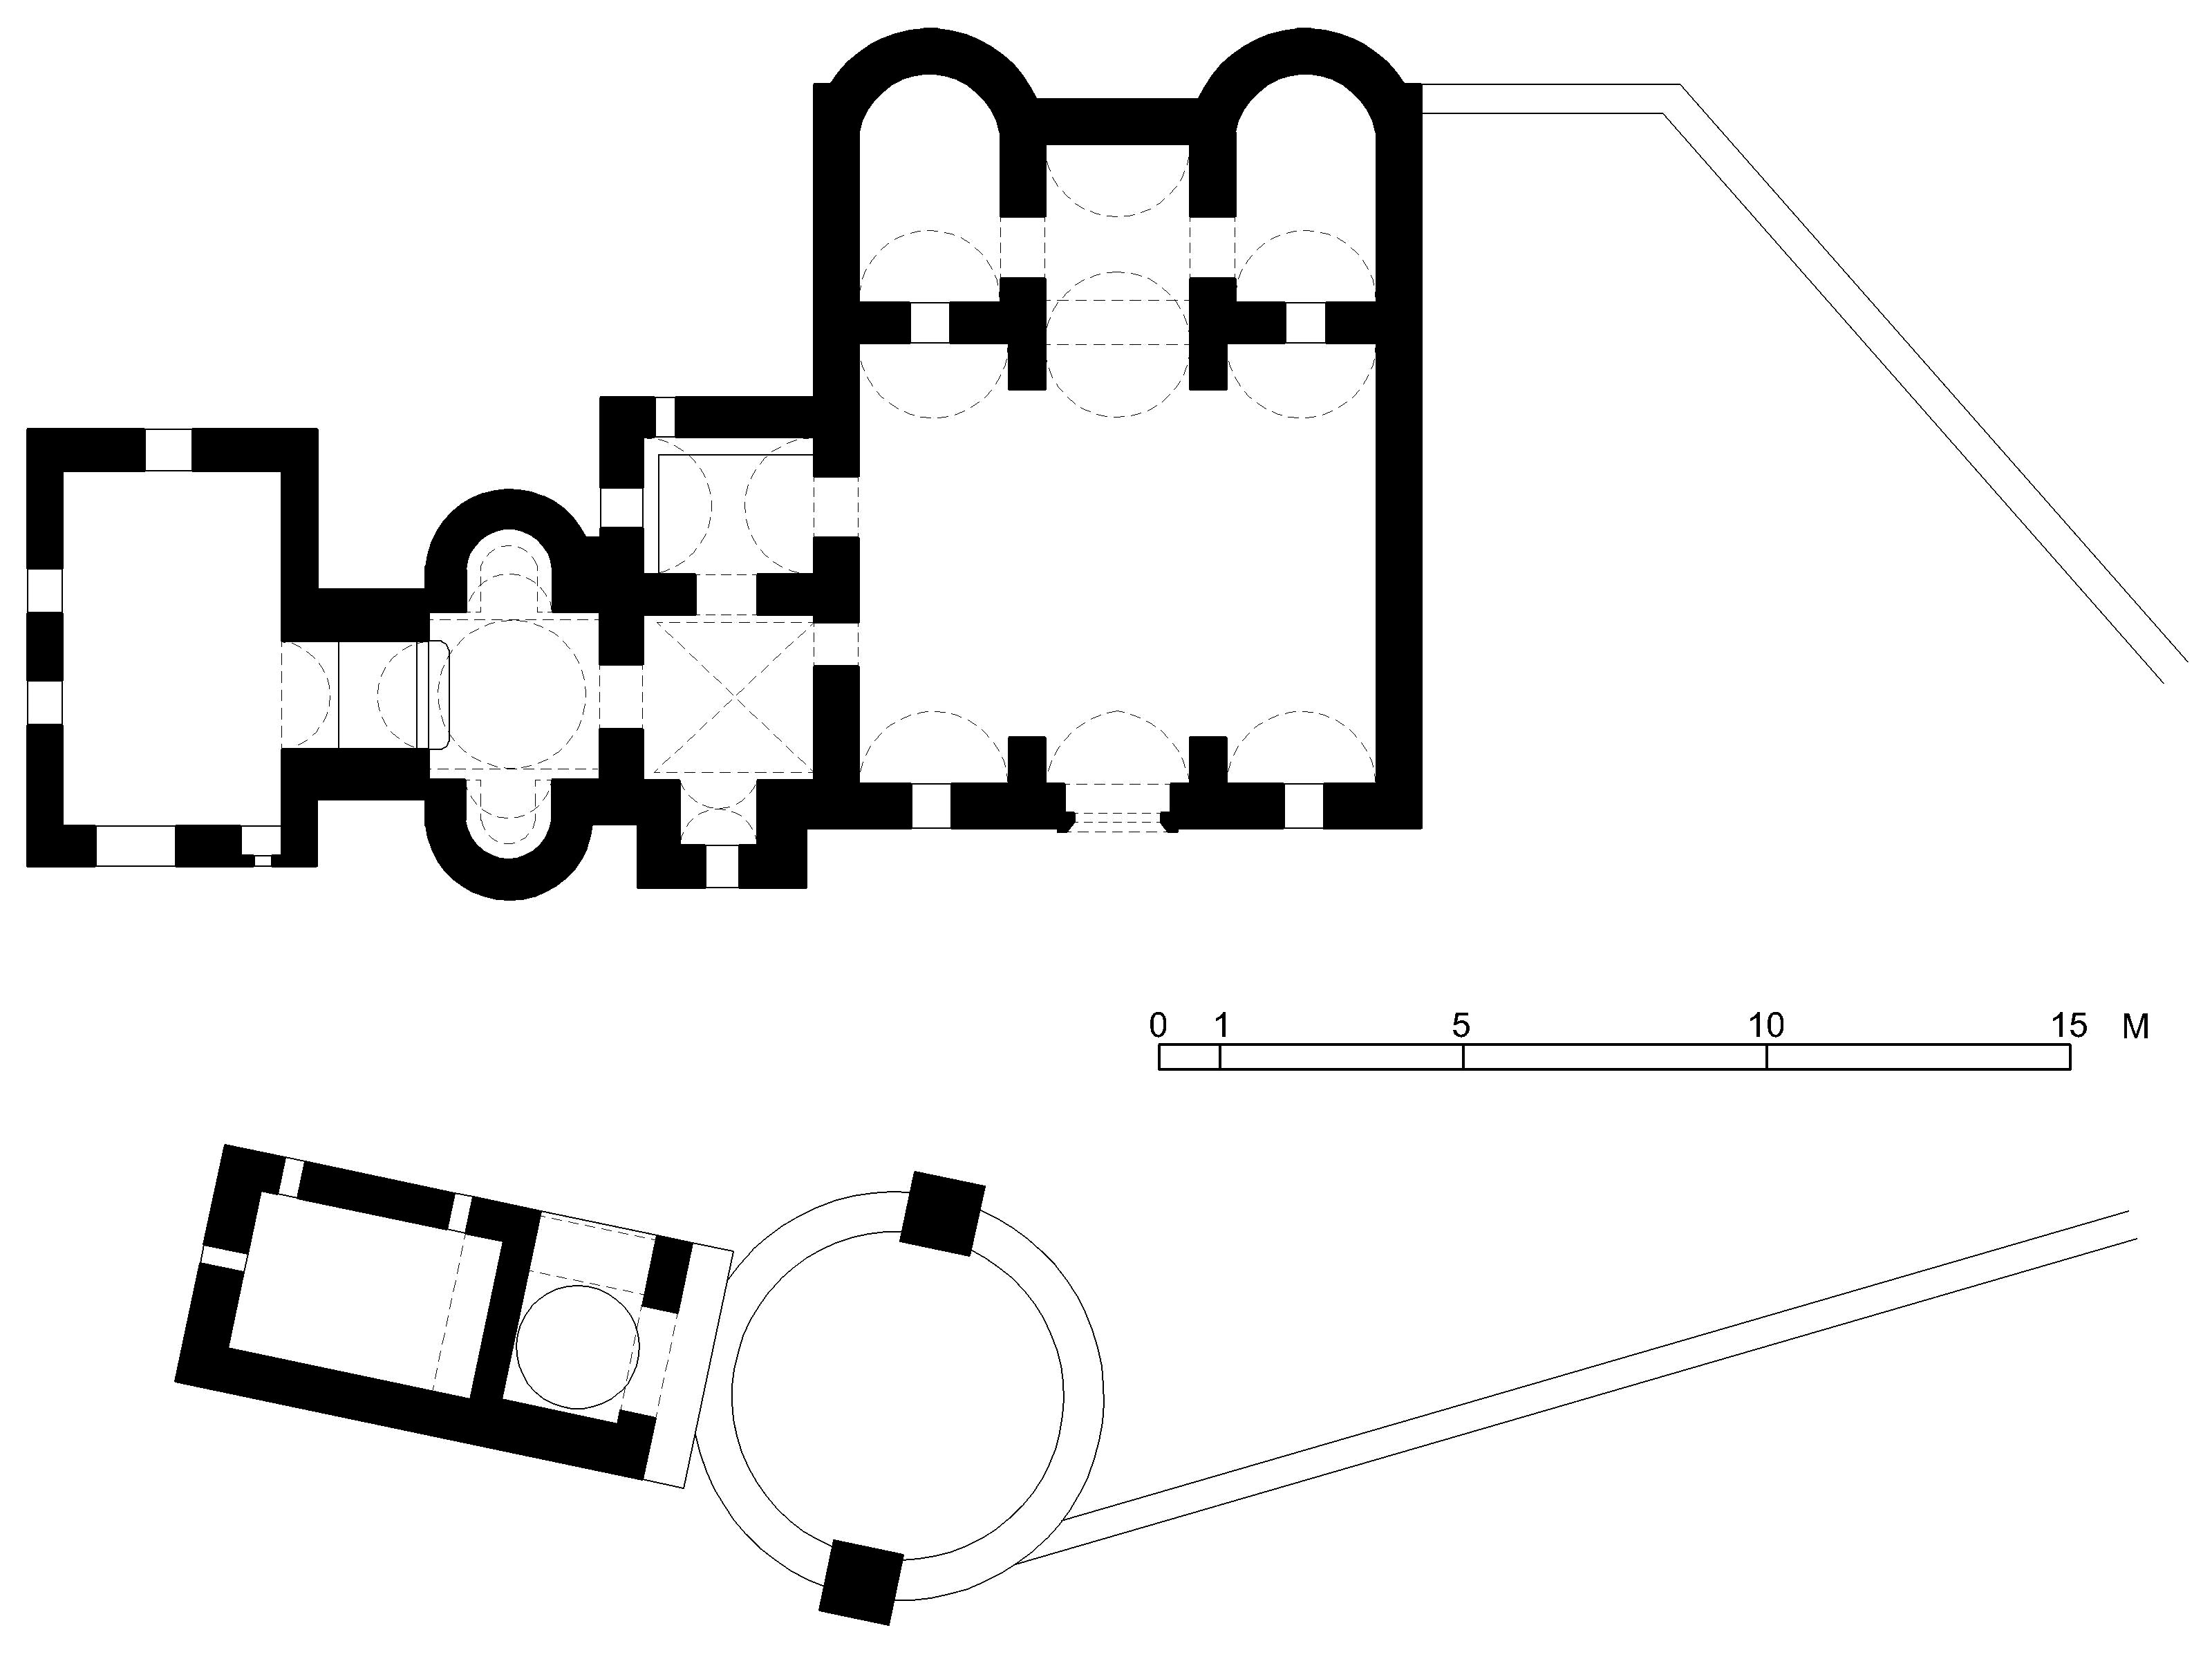 Floor plan of Qusayr 'Amra , Azraq